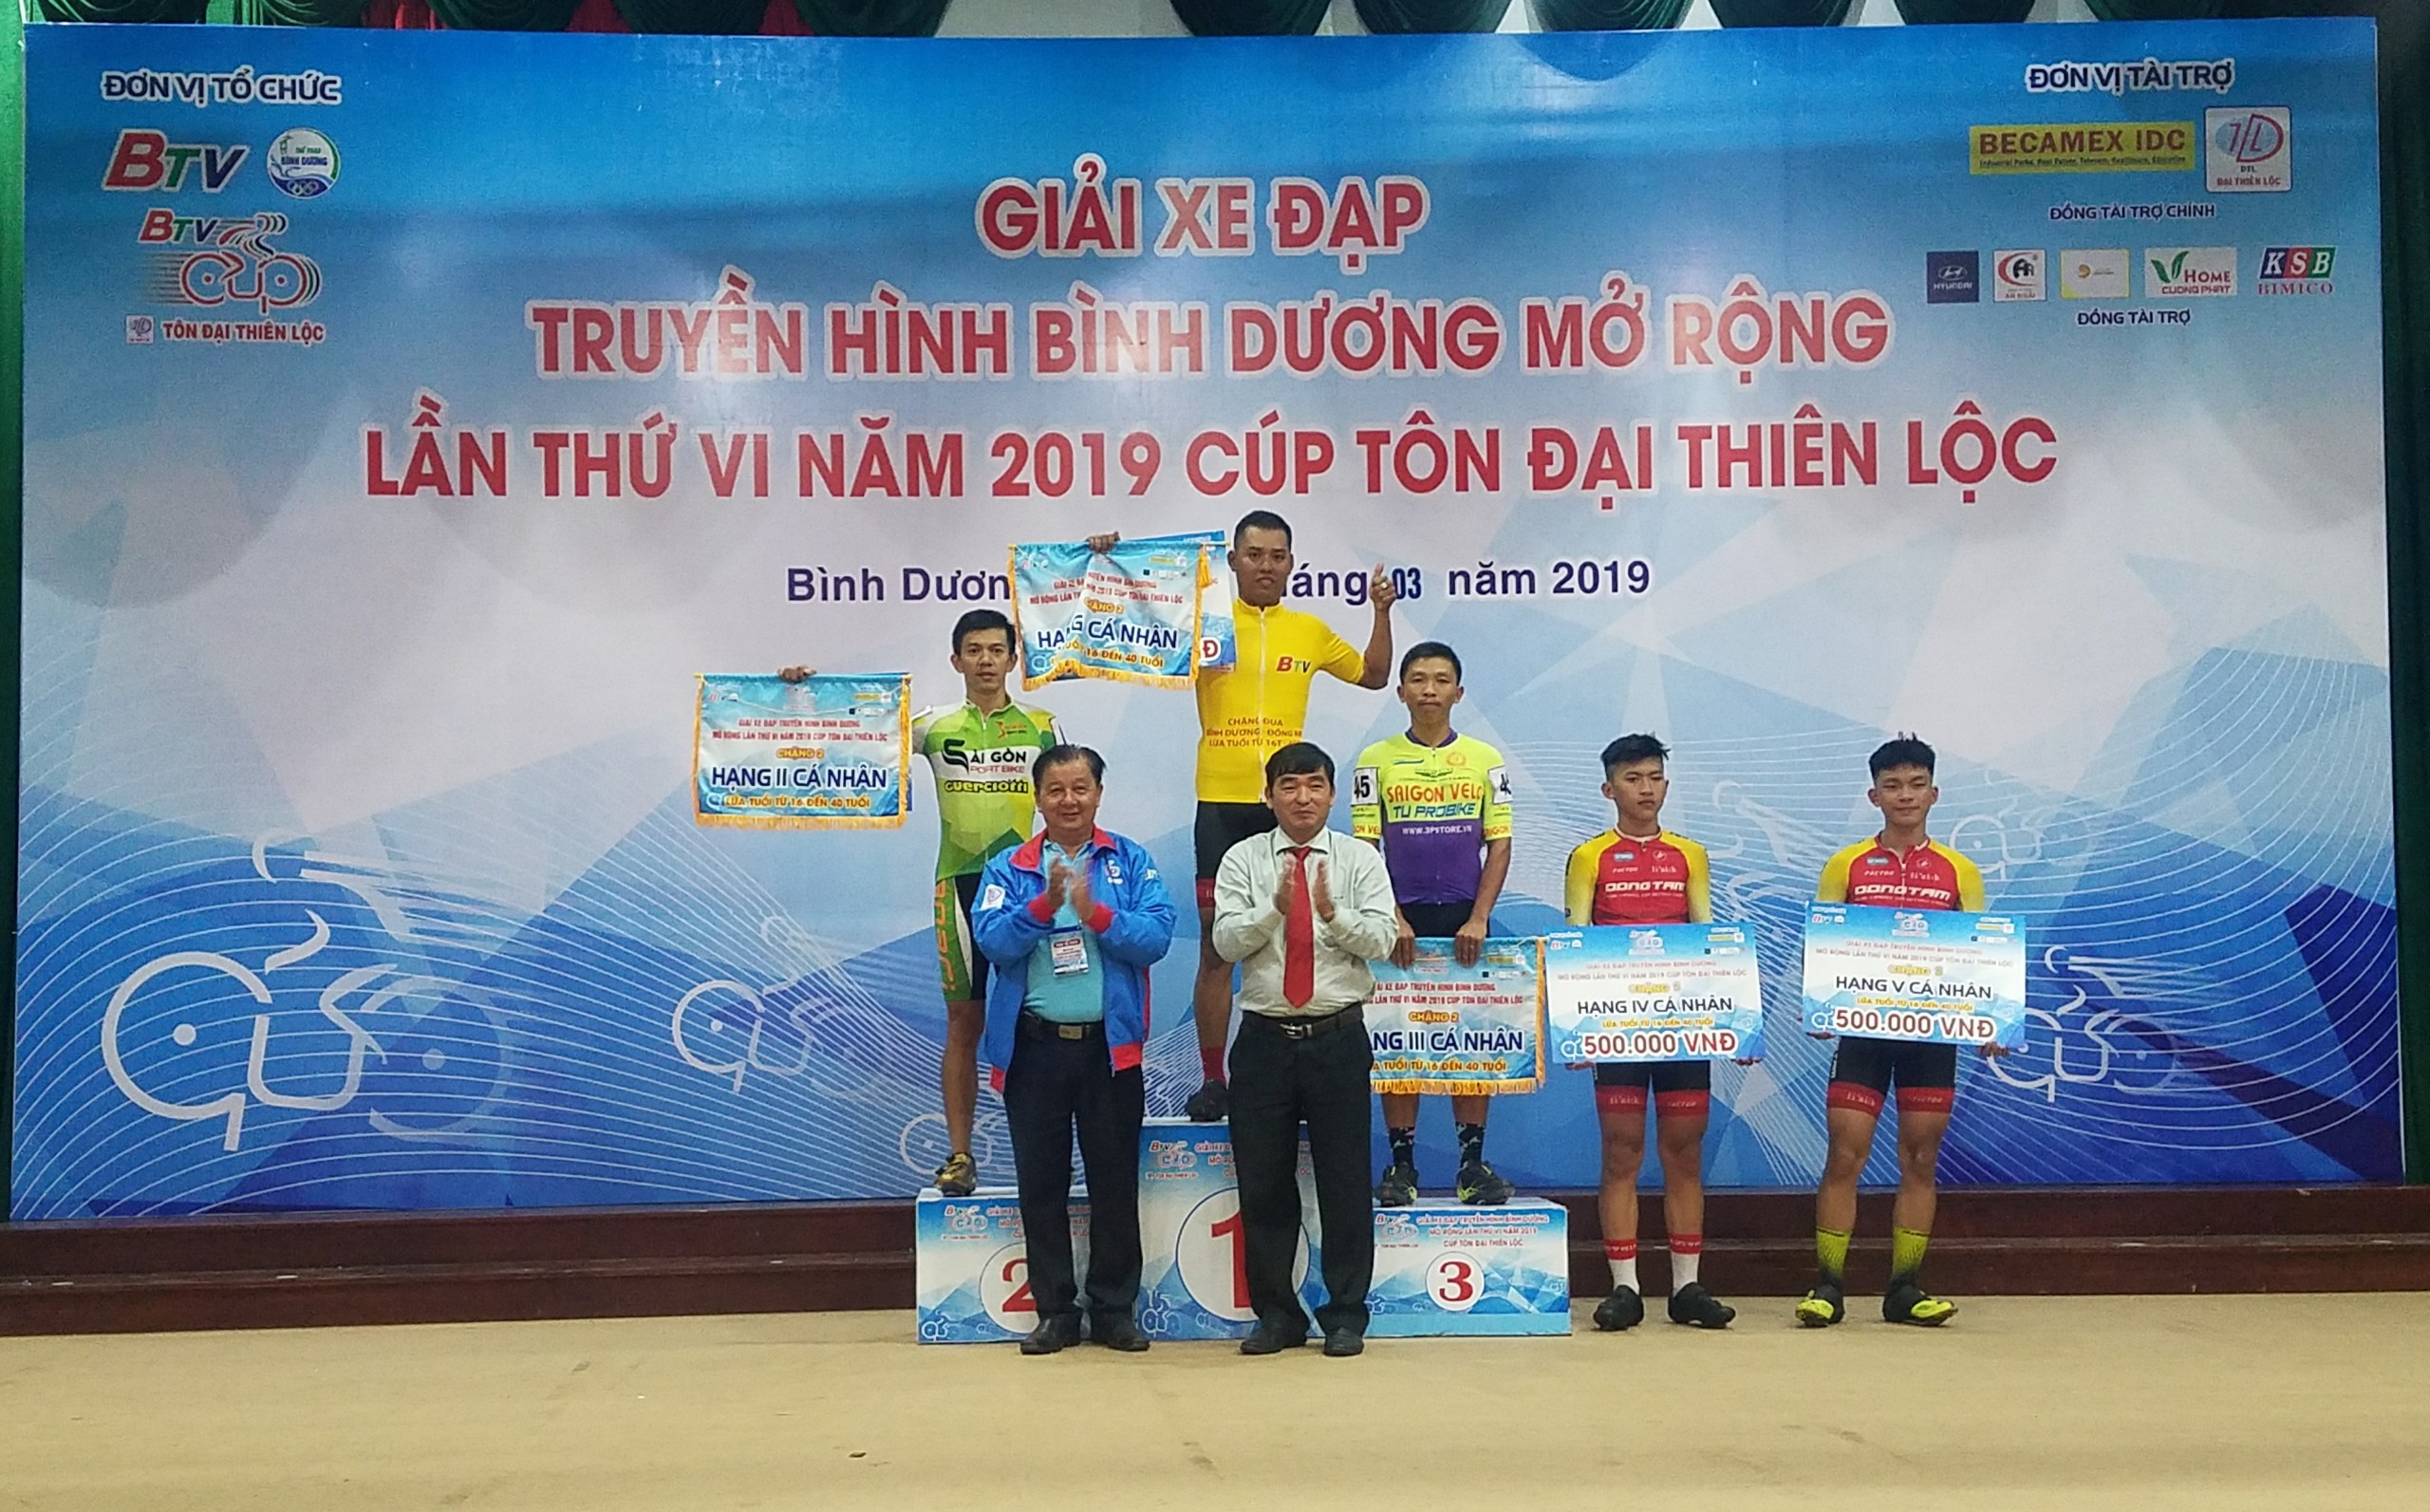 Chặng 2 Giải xe đạp THBD mở rộng lần thứ VI năm 2019 – Cúp Tôn Đại Thiên Lộc